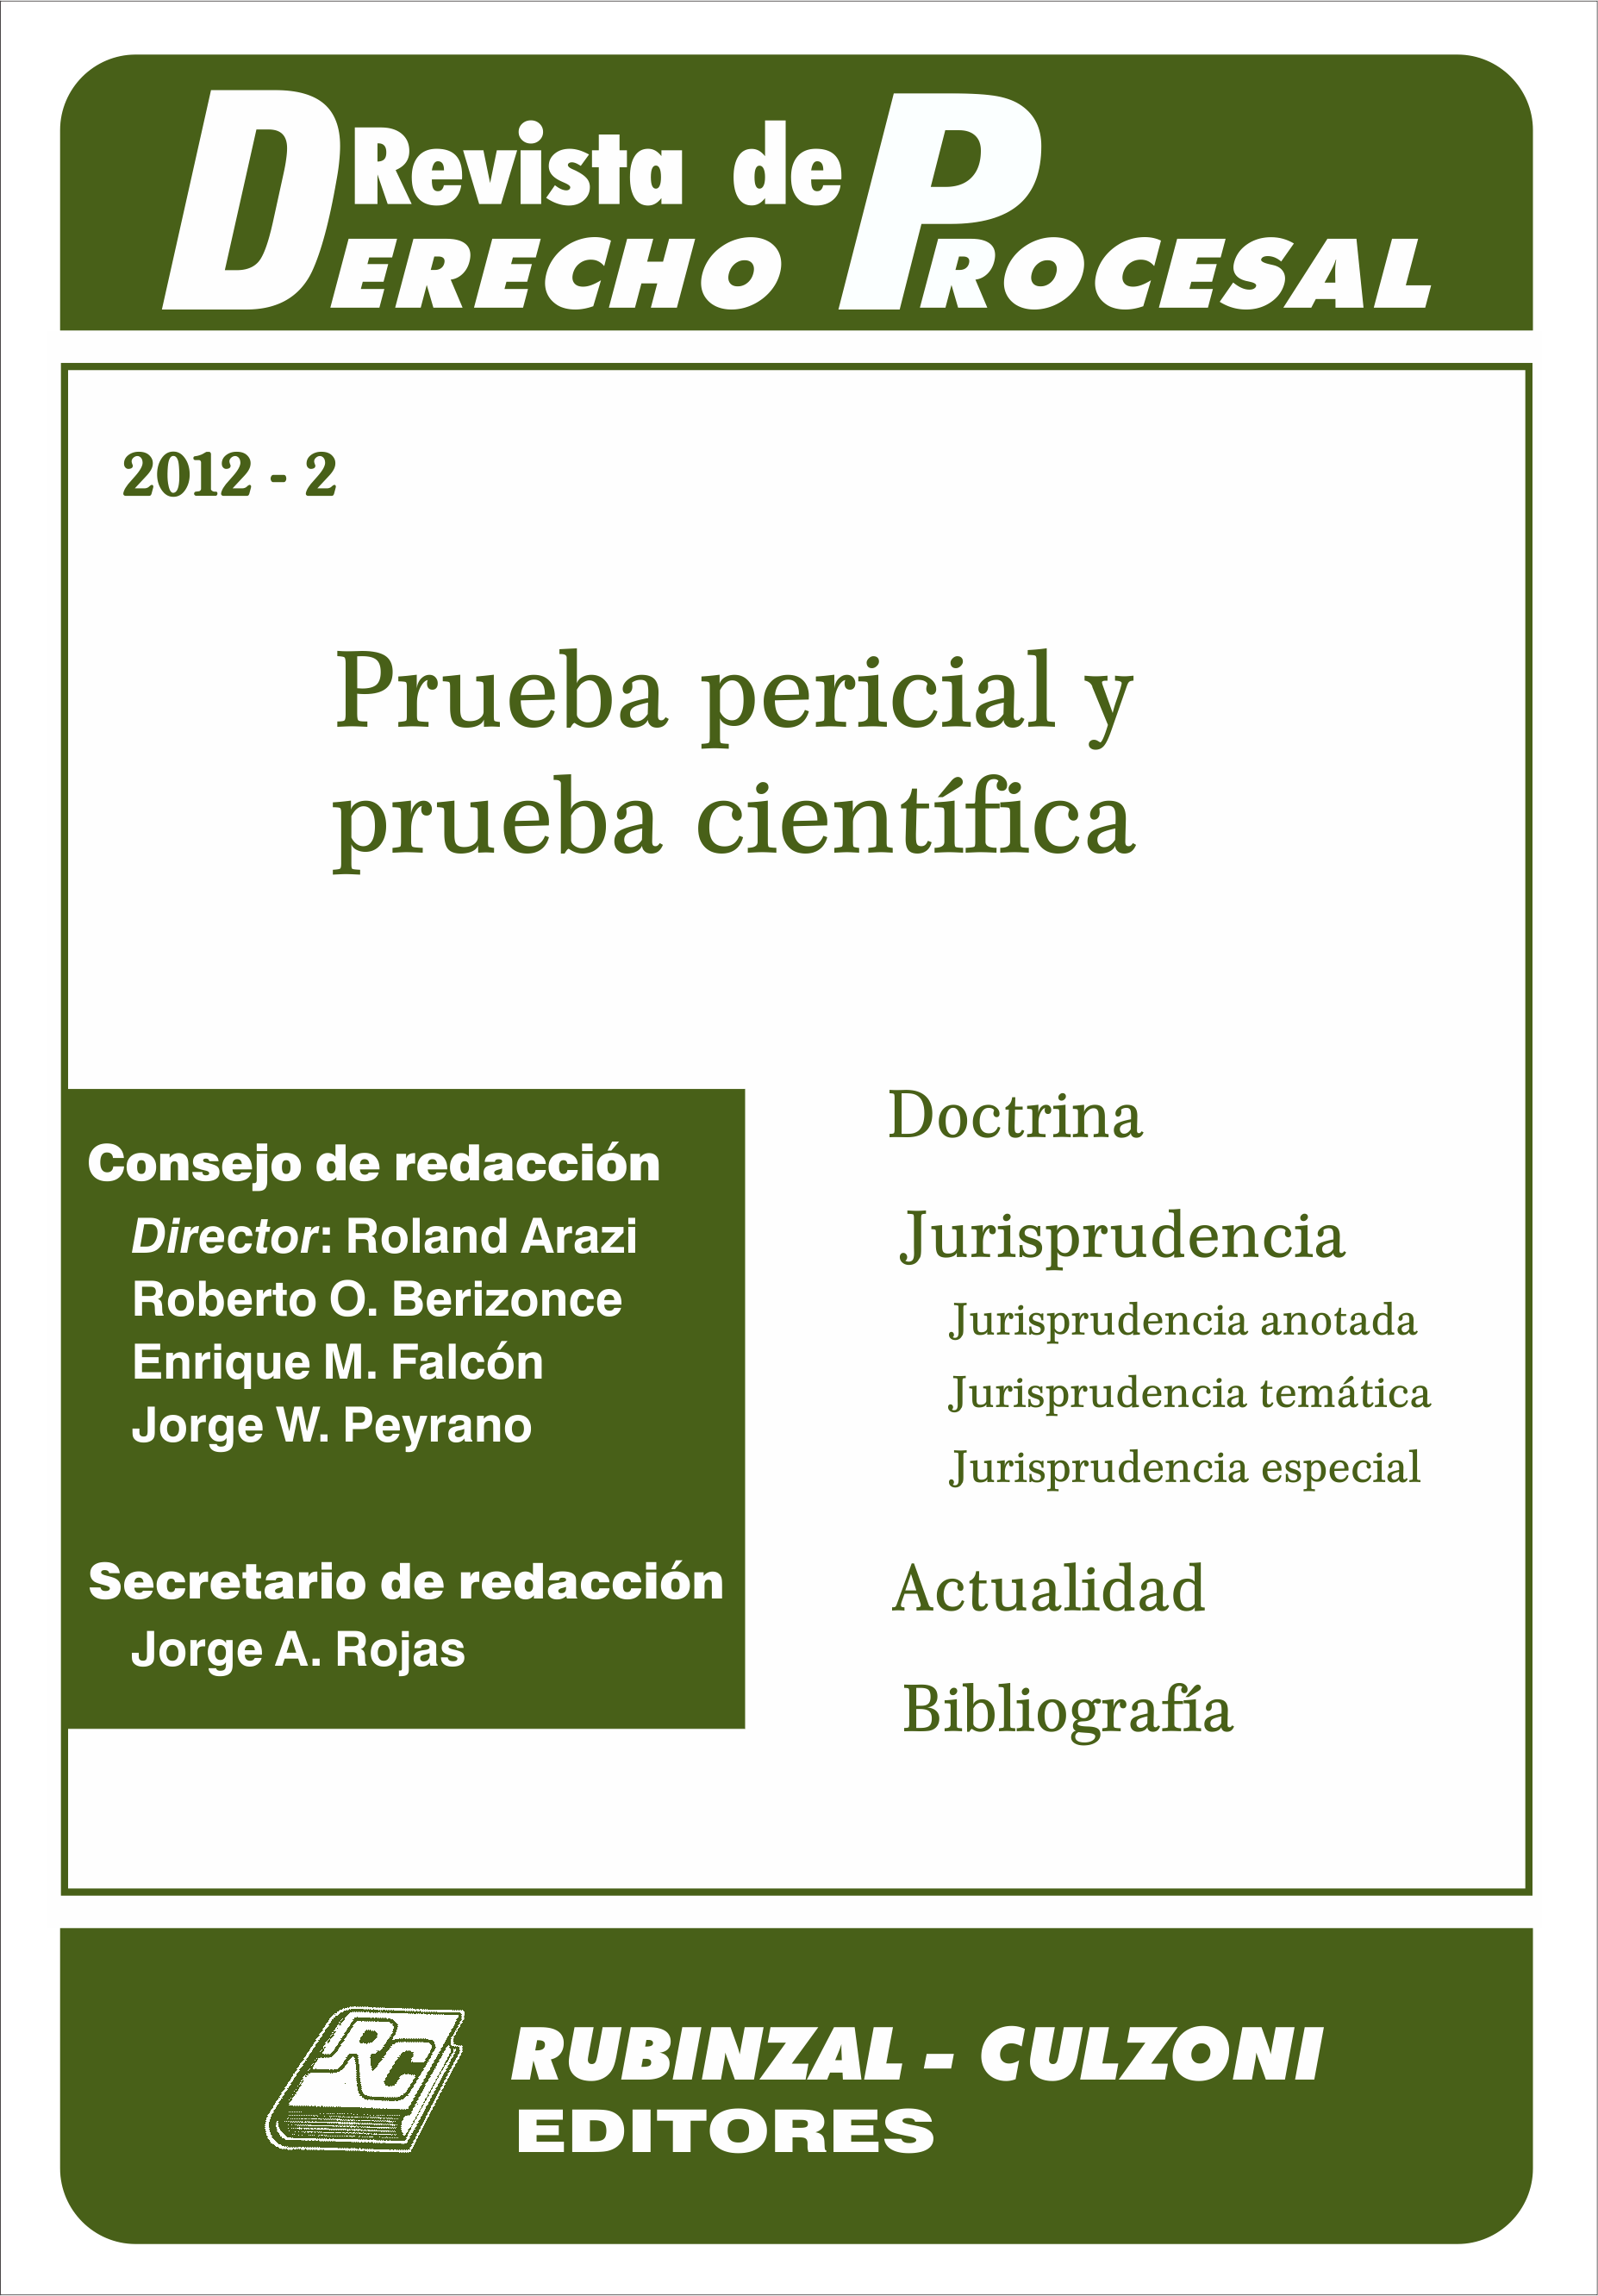 Revista de Derecho Procesal - Prueba pericial y prueba científica